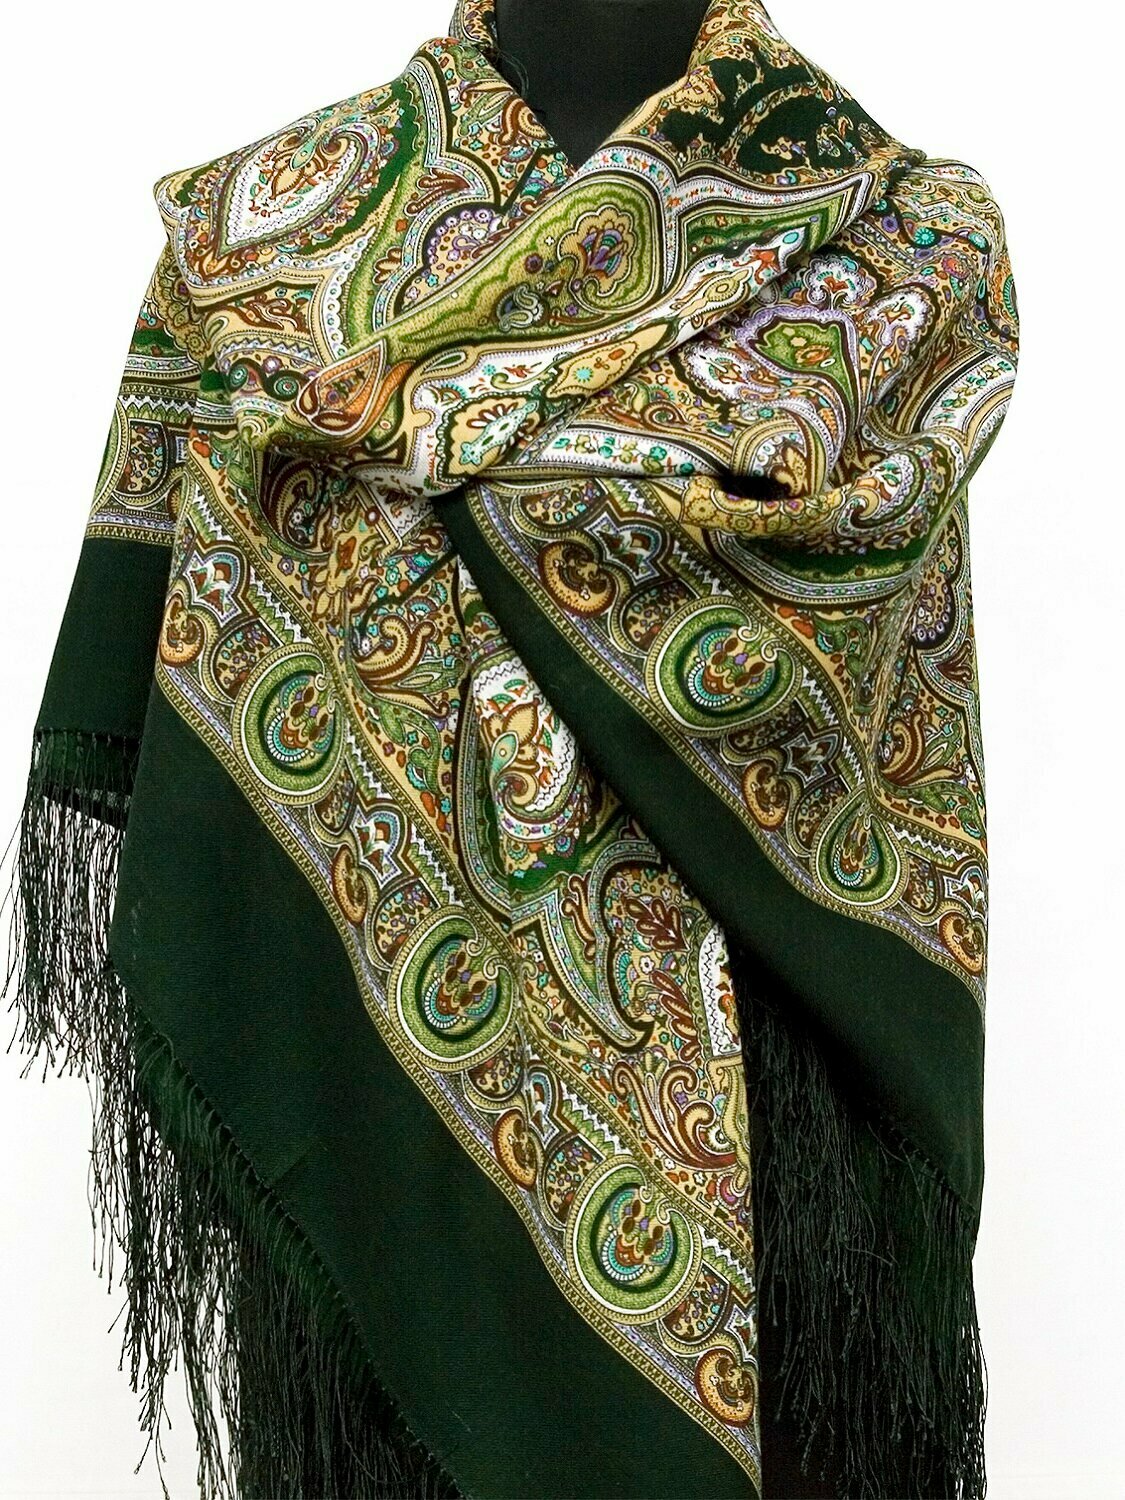 Шерстяной платок Павловопосадские платки Испанский 10, зеленый, 146 х 146 см - фотография № 2